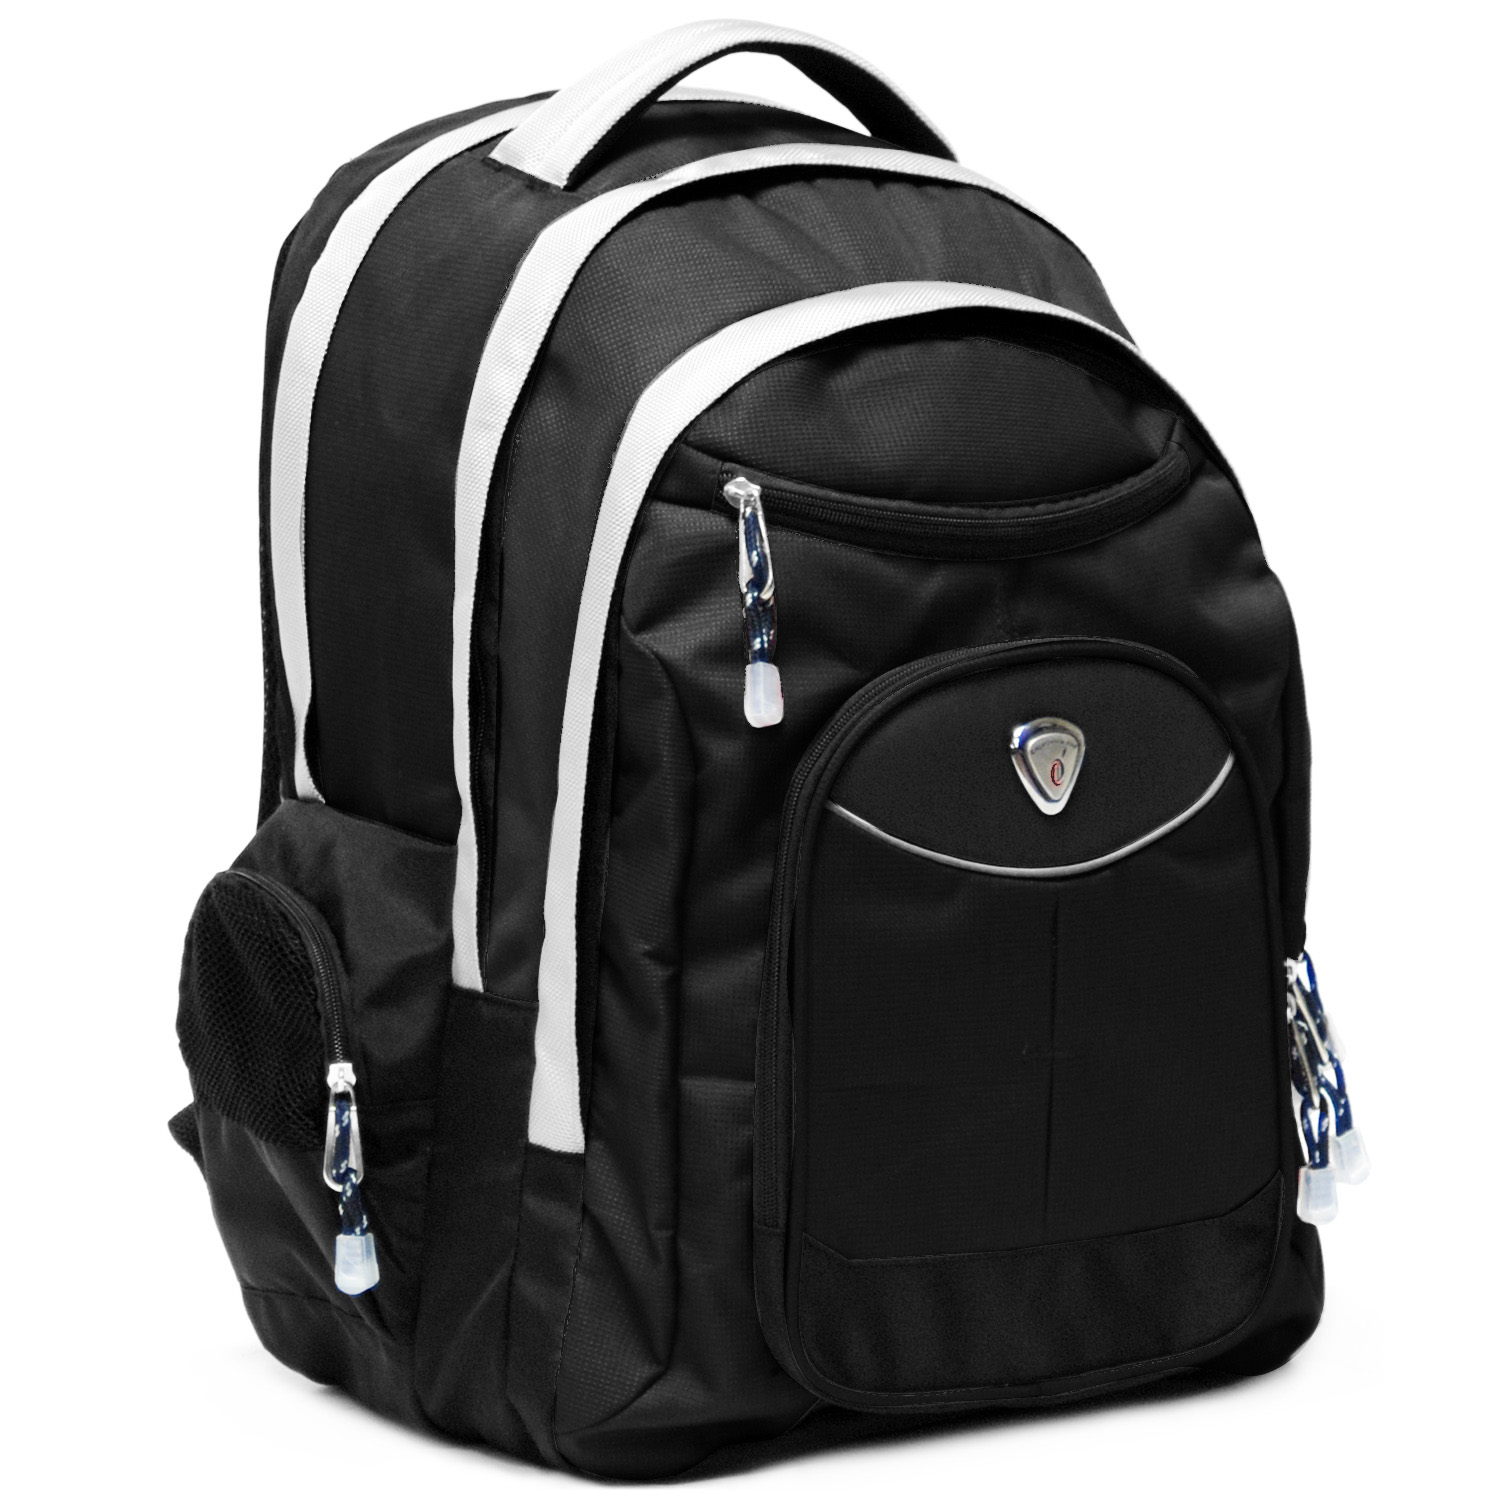 19" Deluxe Laptop Backpack (Big Shot)